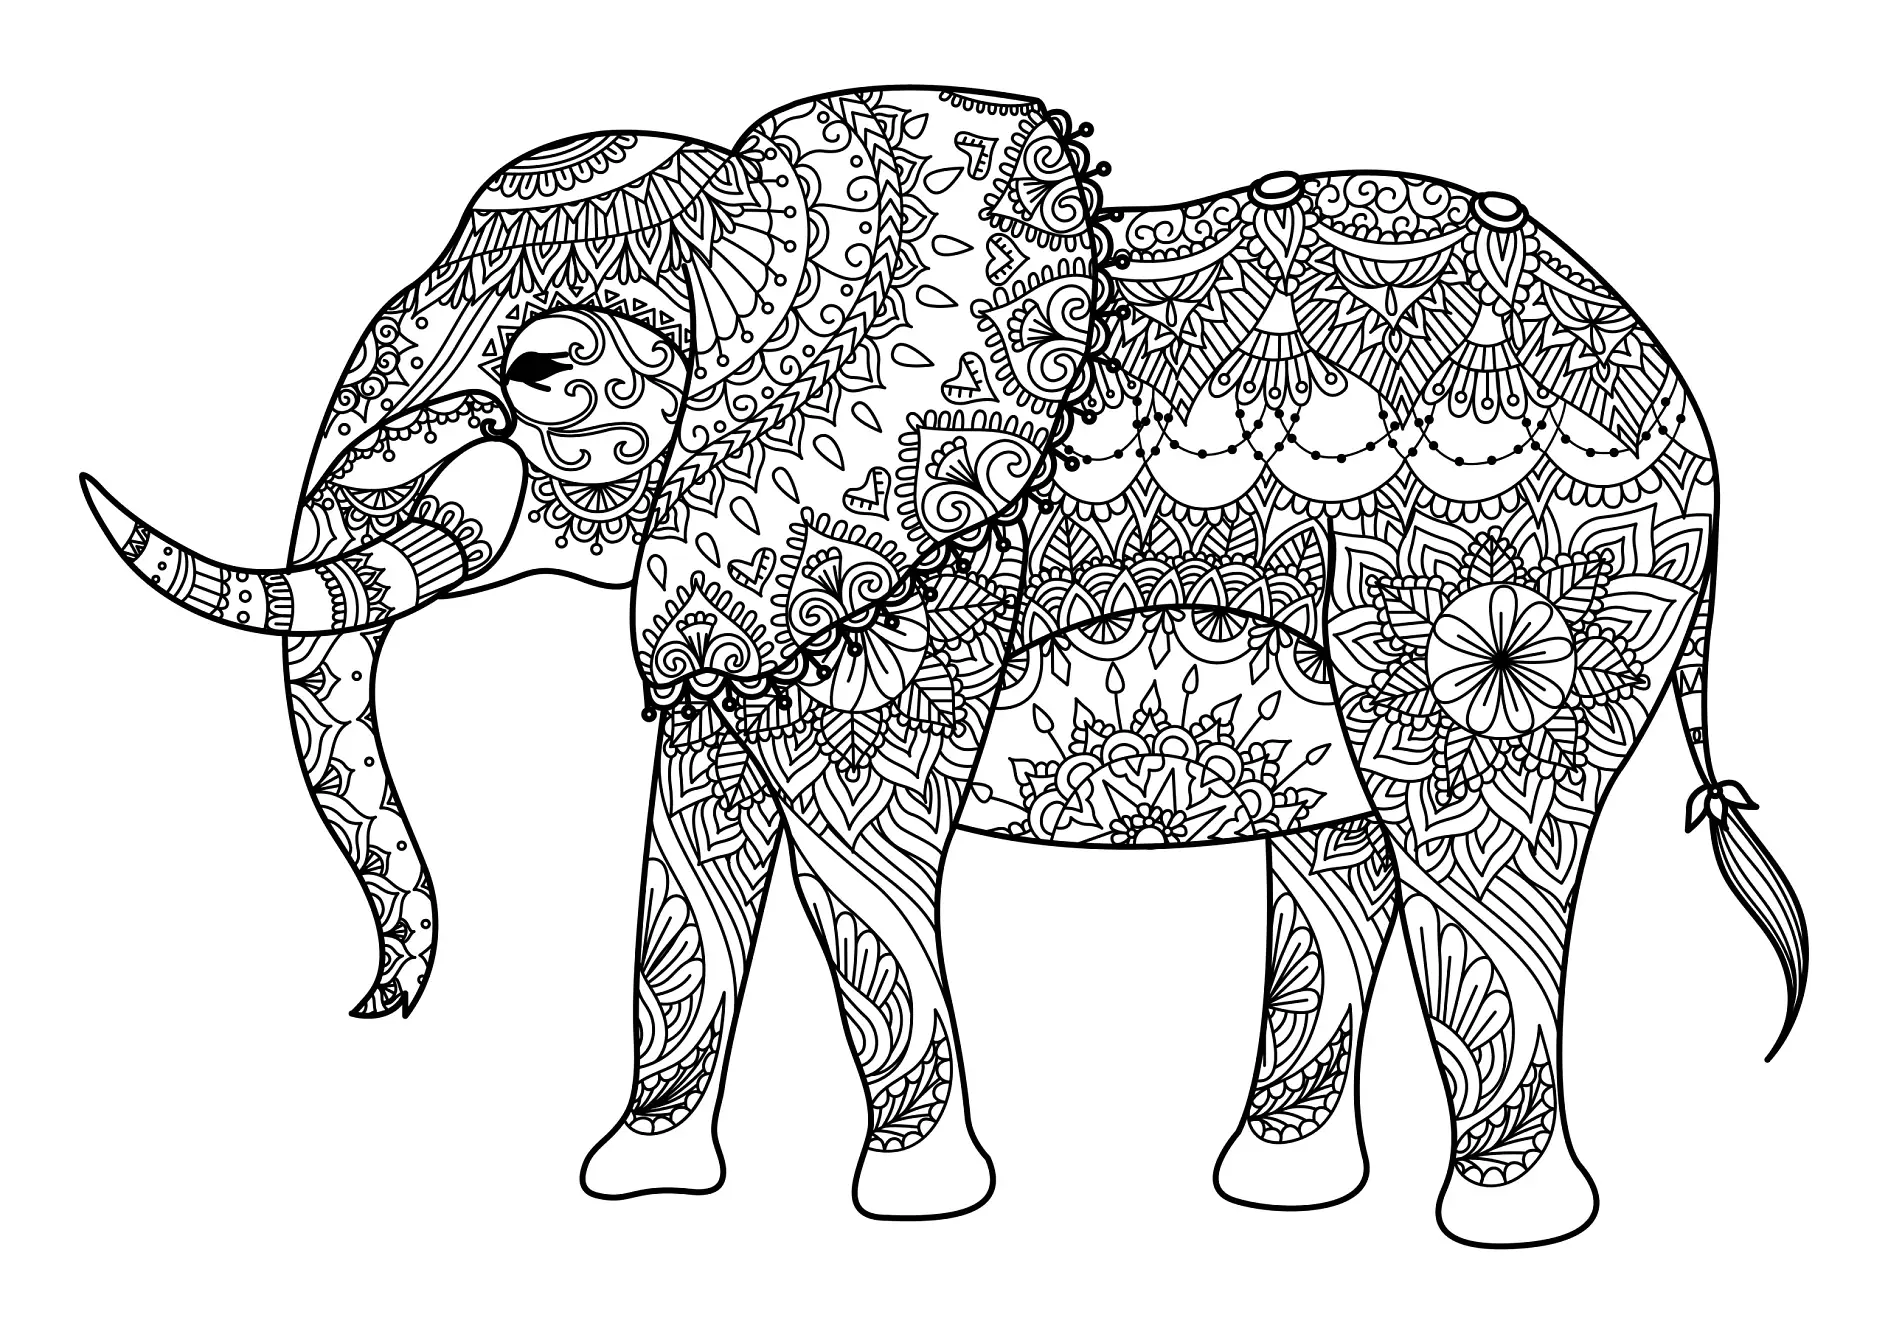 Ausmalbild Mandala Elefant mit dekorativen Mustern und floralen Details